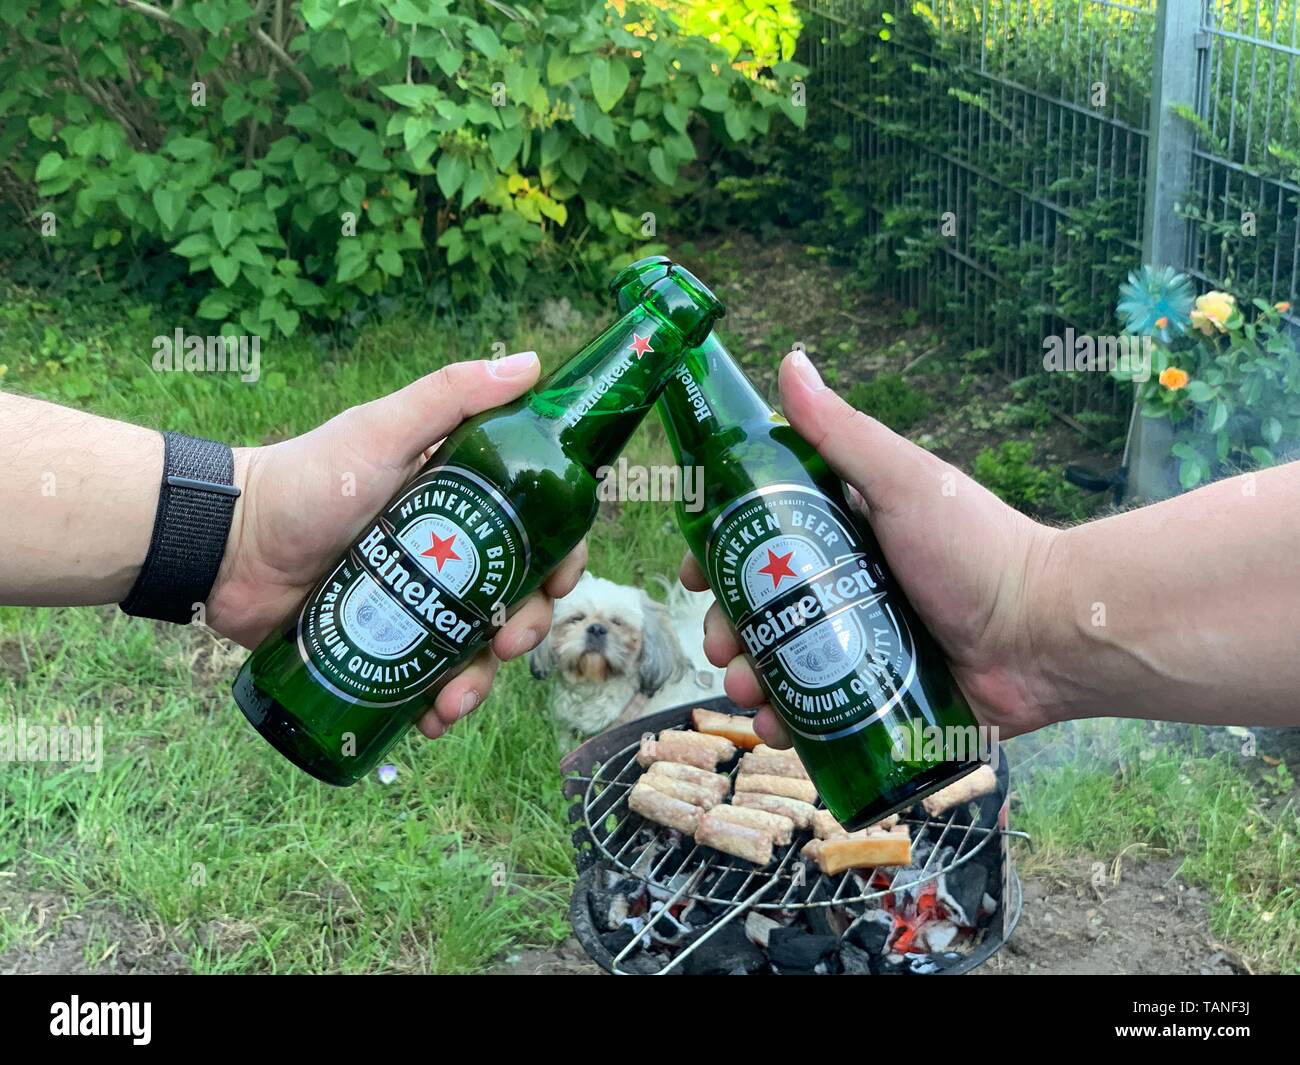 Brindando con cerveza Heineken Closeup manos capturar al partido de barbacoa en el jardín Foto de stock